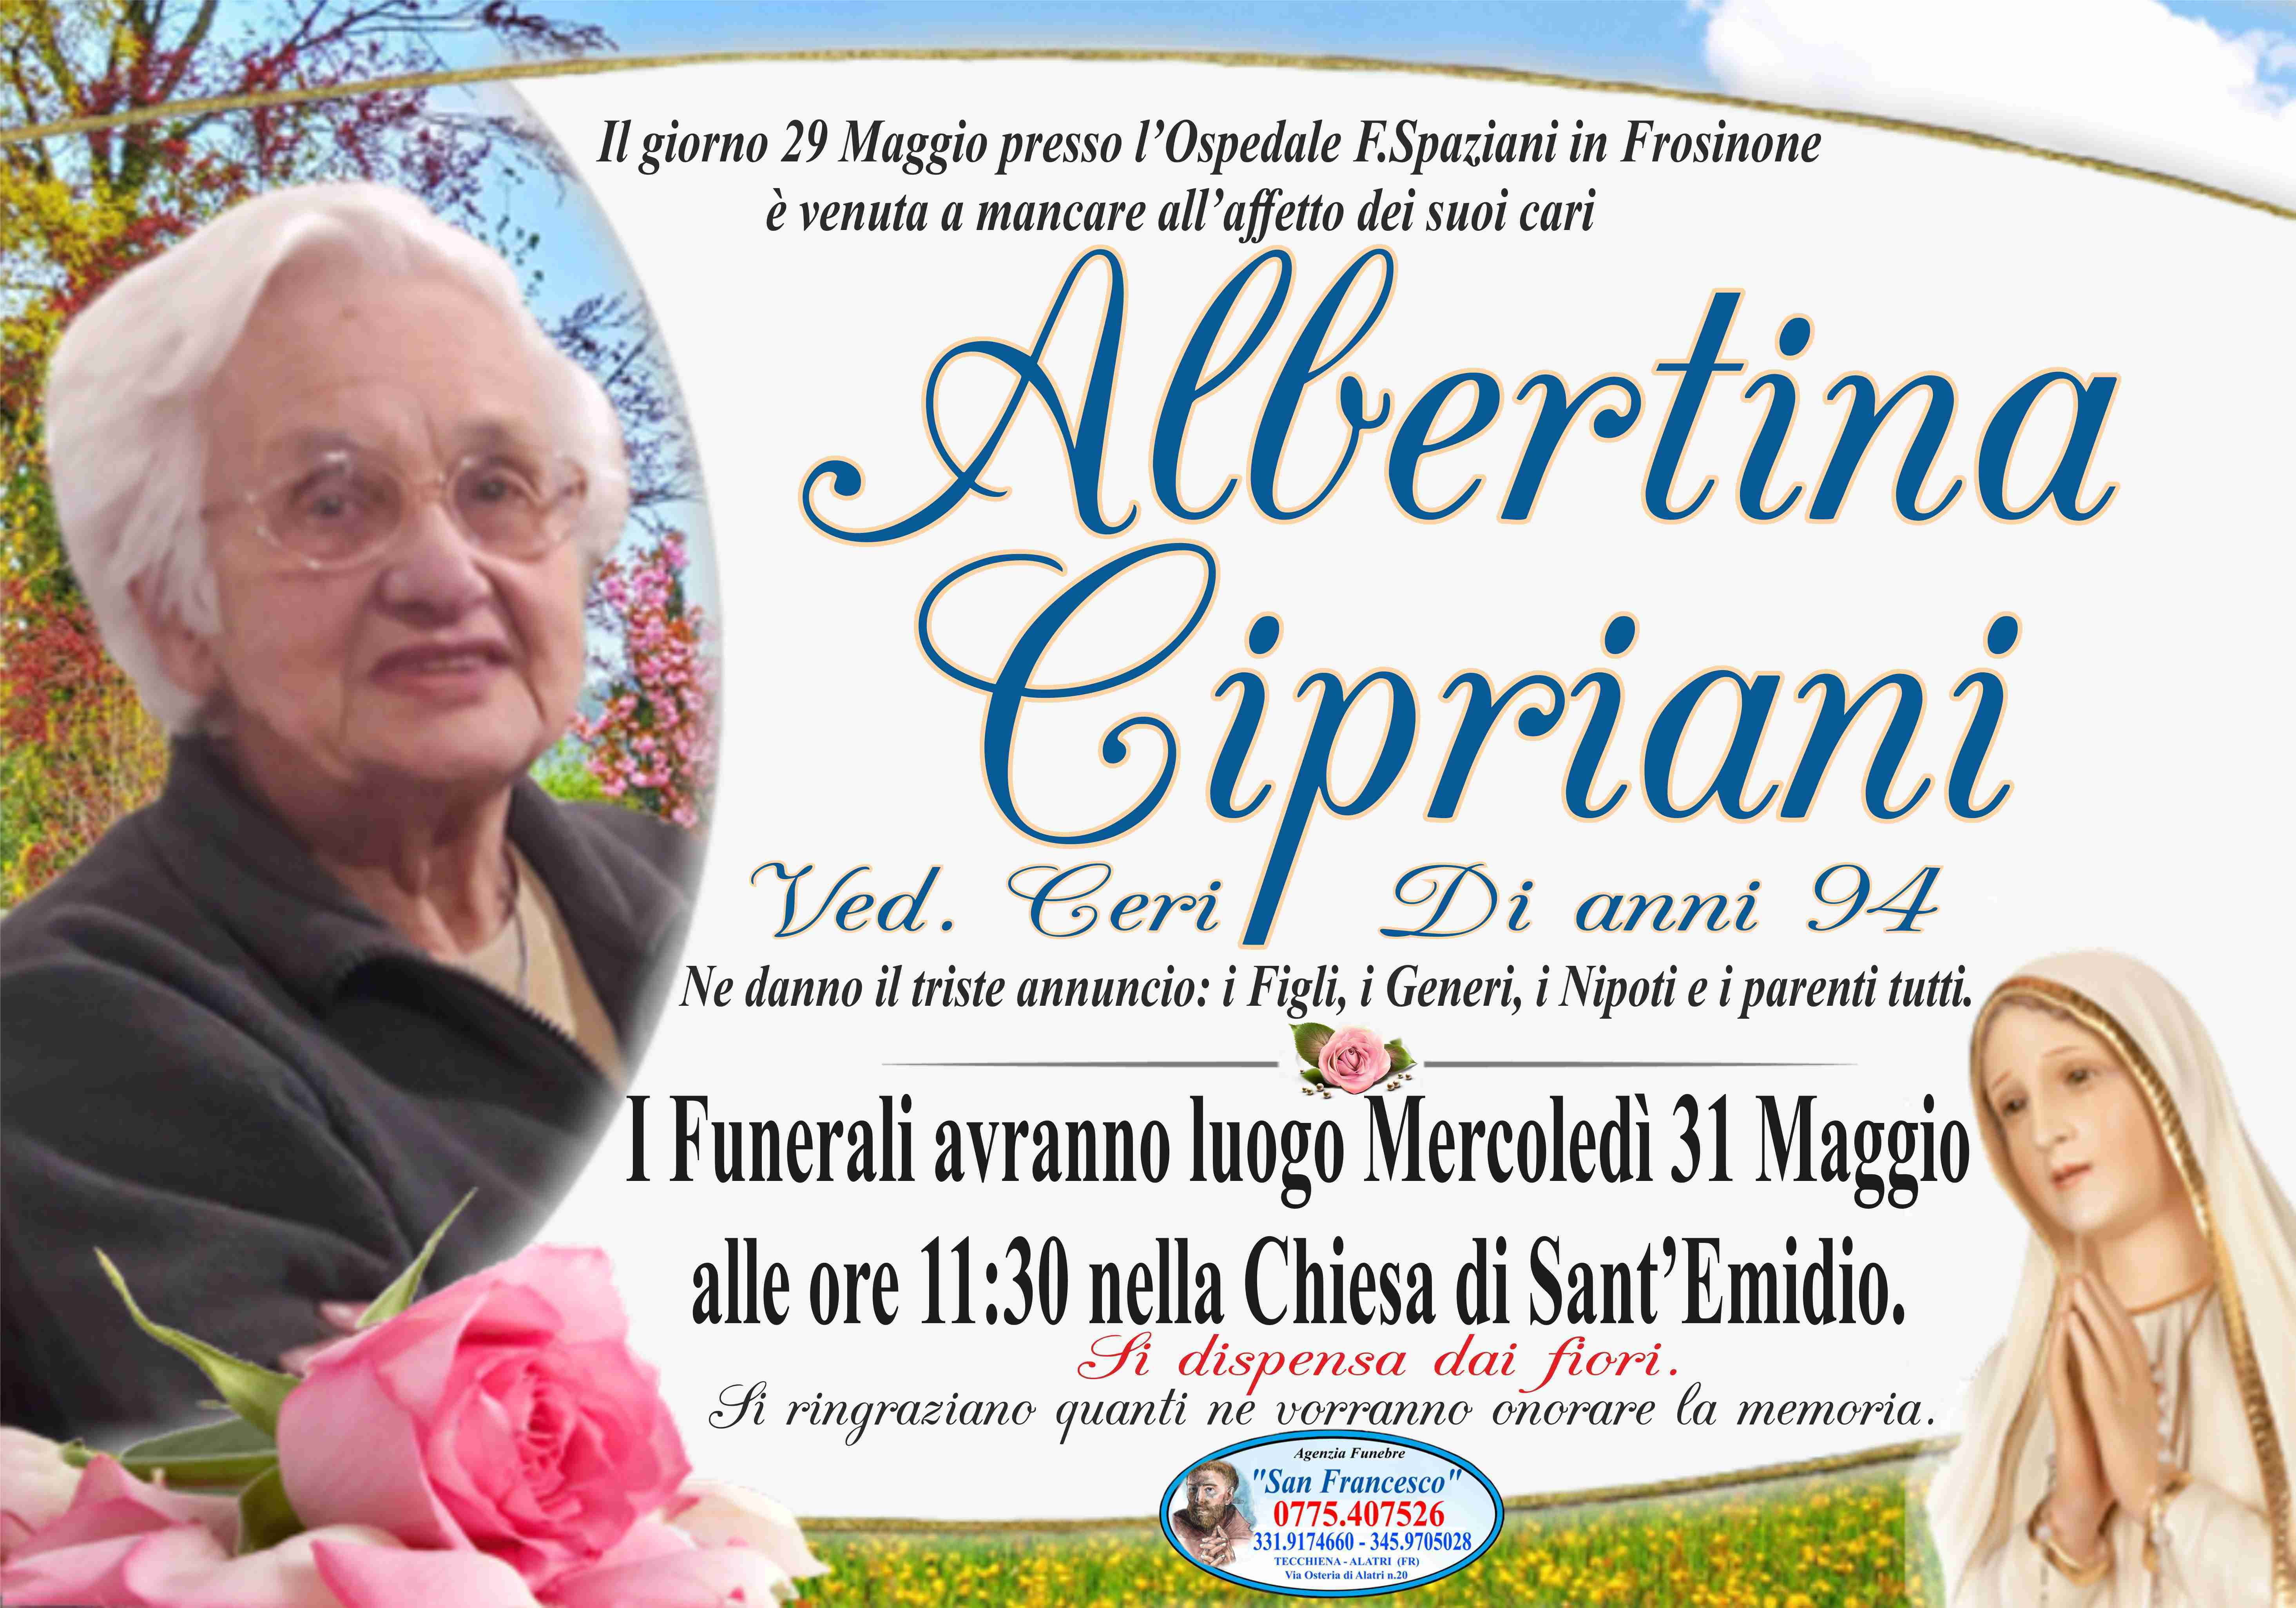 Albertina Cipriani